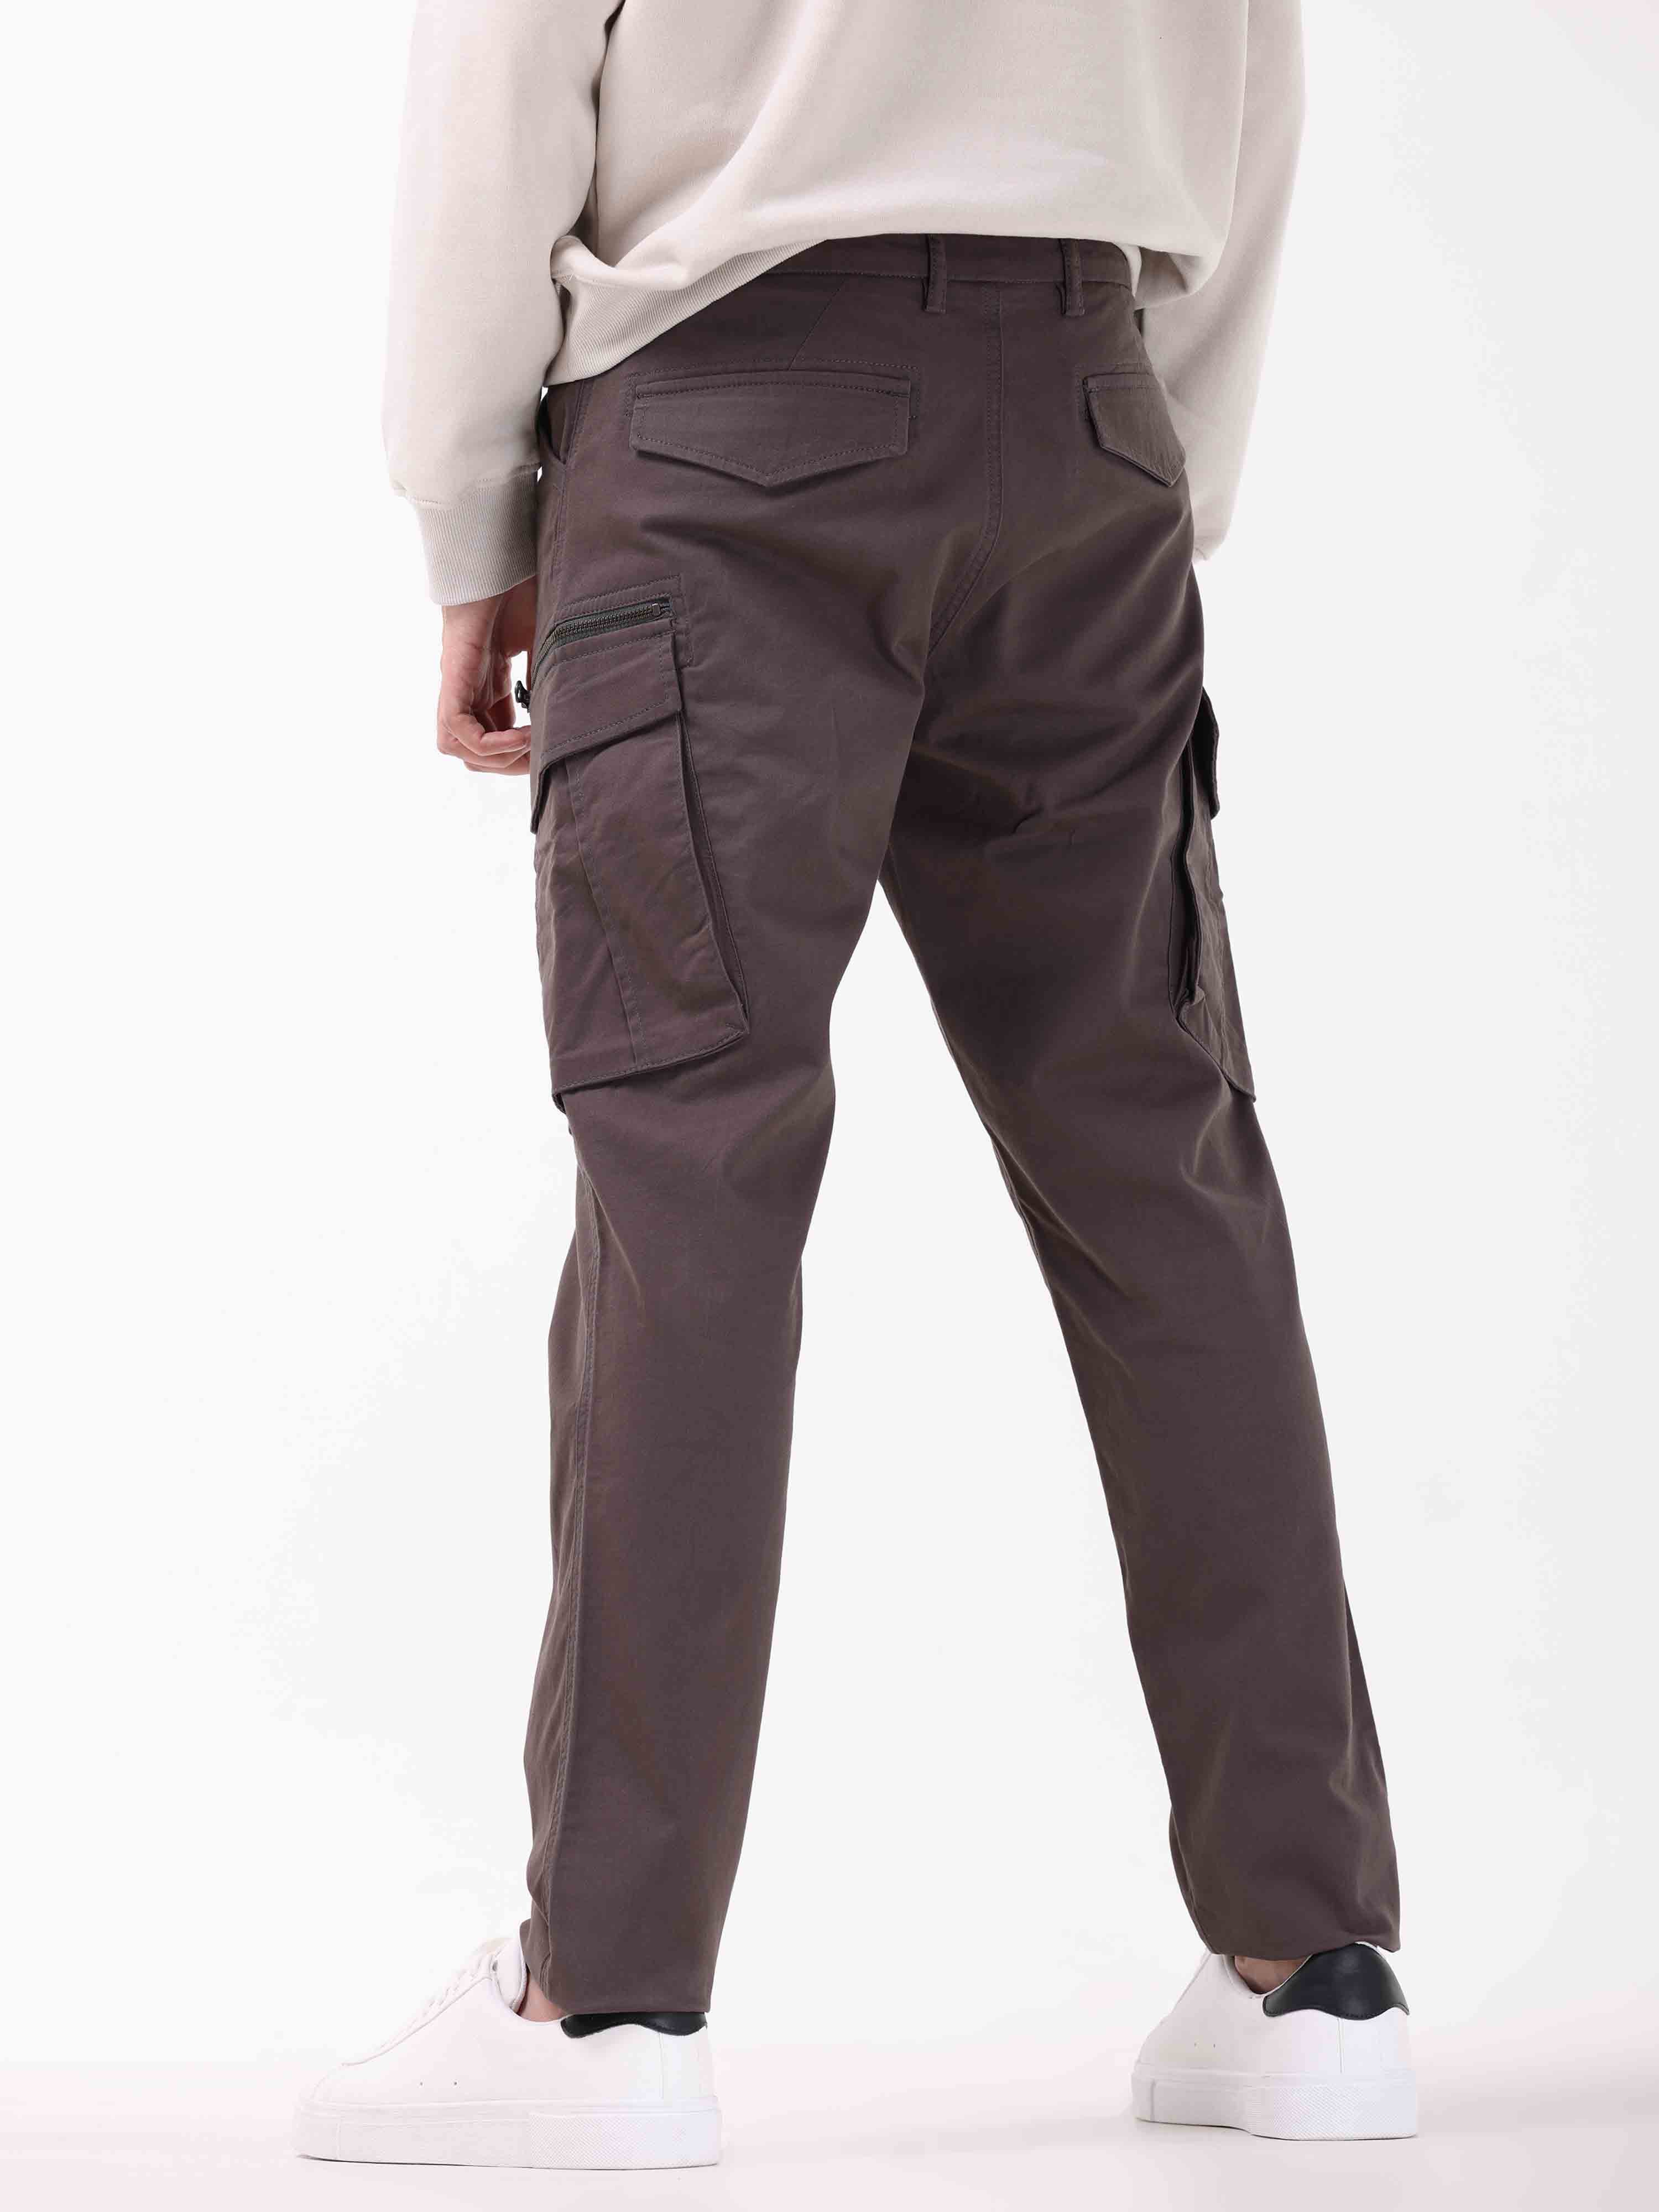 Buy Off Duty India Street Wear Cotton Cargo Pants - Black online